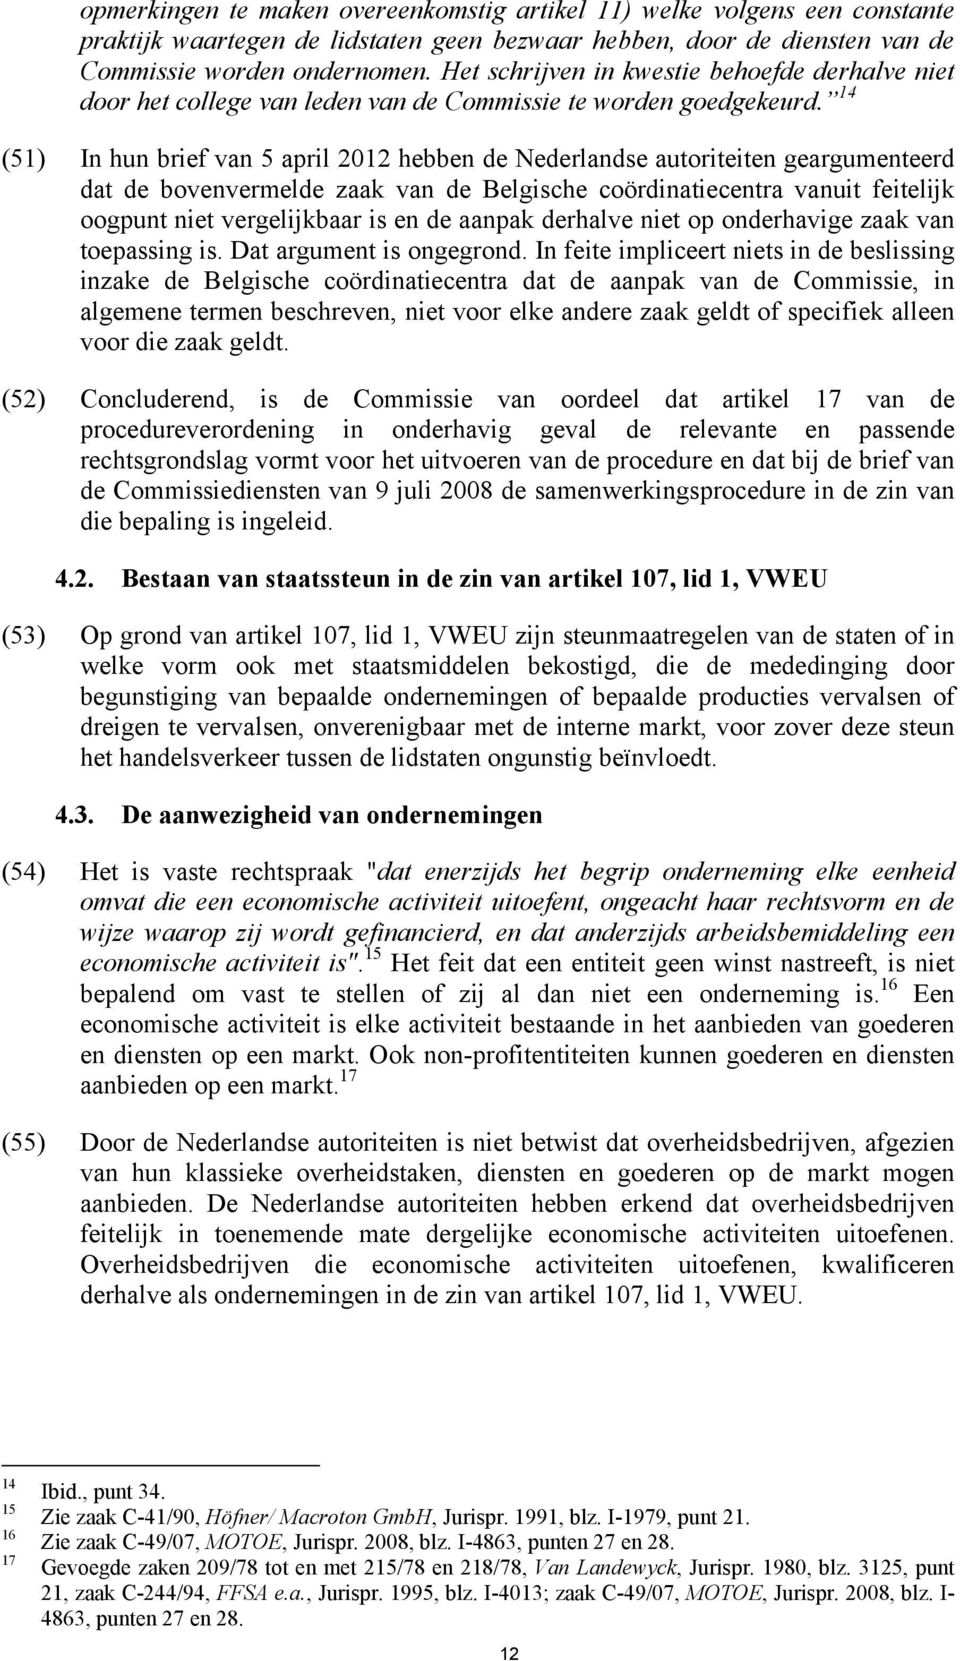 14 (51) In hun brief van 5 april 2012 hebben de Nederlandse autoriteiten geargumenteerd dat de bovenvermelde zaak van de Belgische coördinatiecentra vanuit feitelijk oogpunt niet vergelijkbaar is en